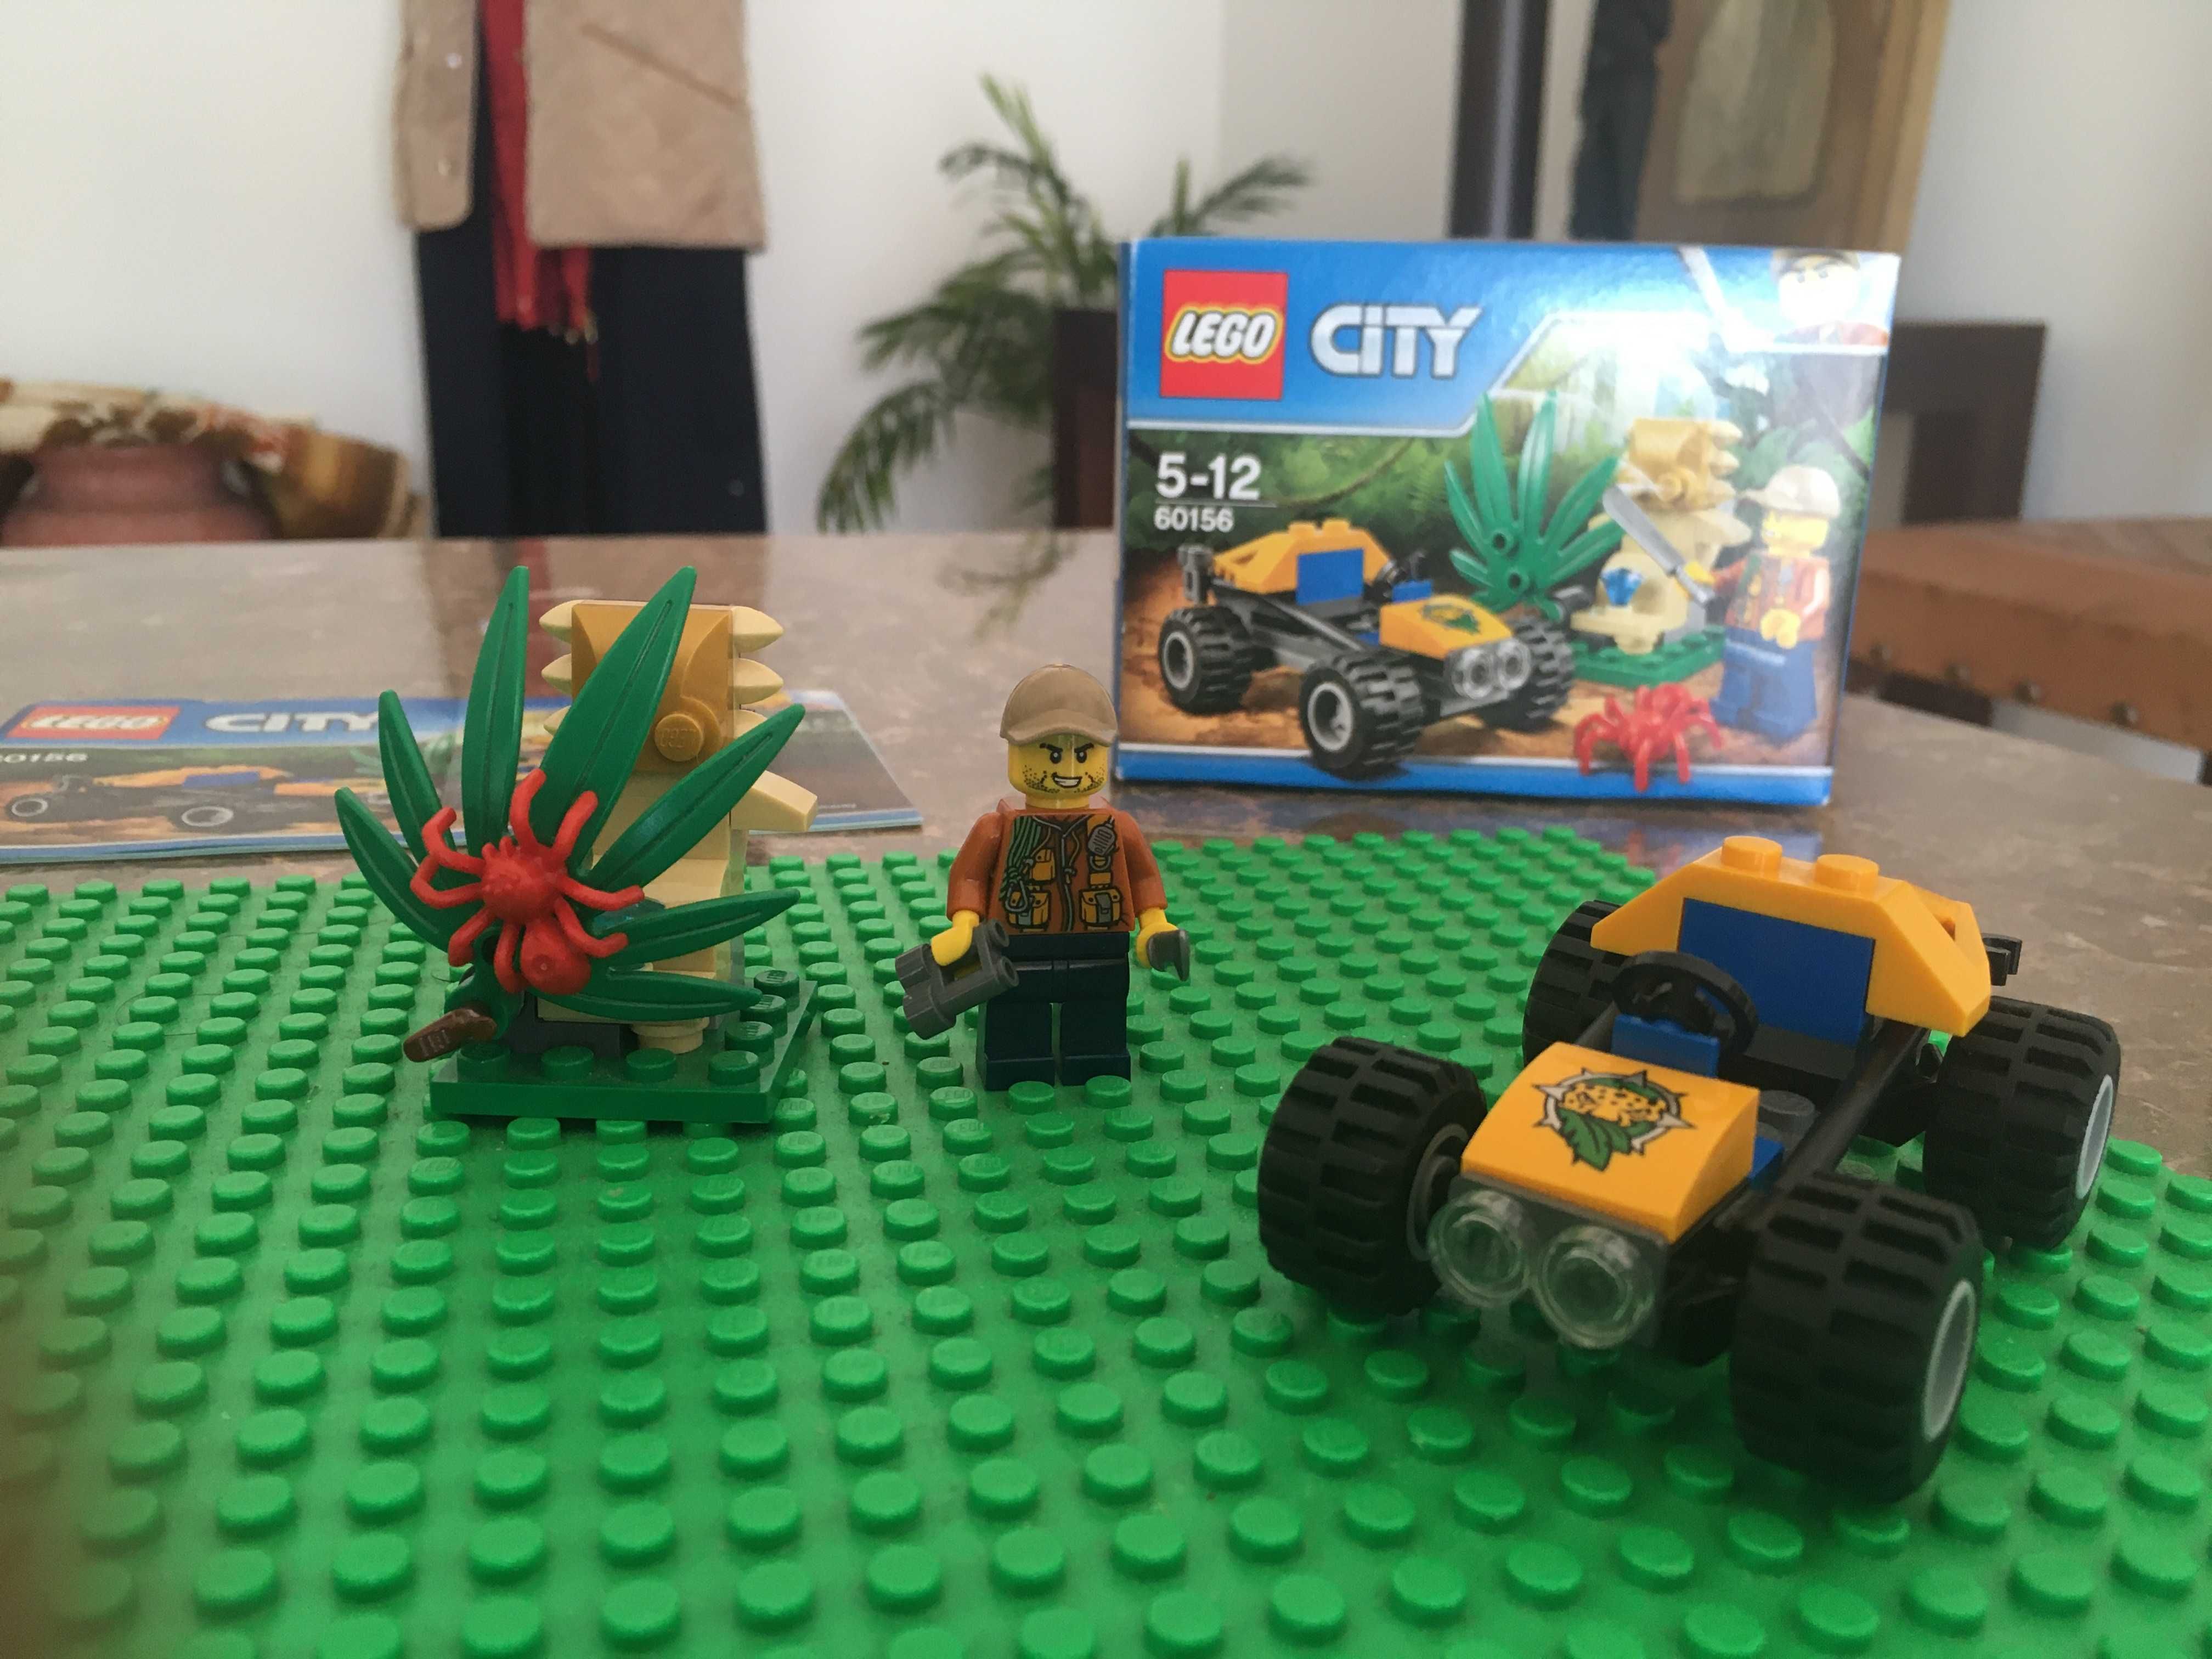 LEGO 60156 Completo e em bom estado